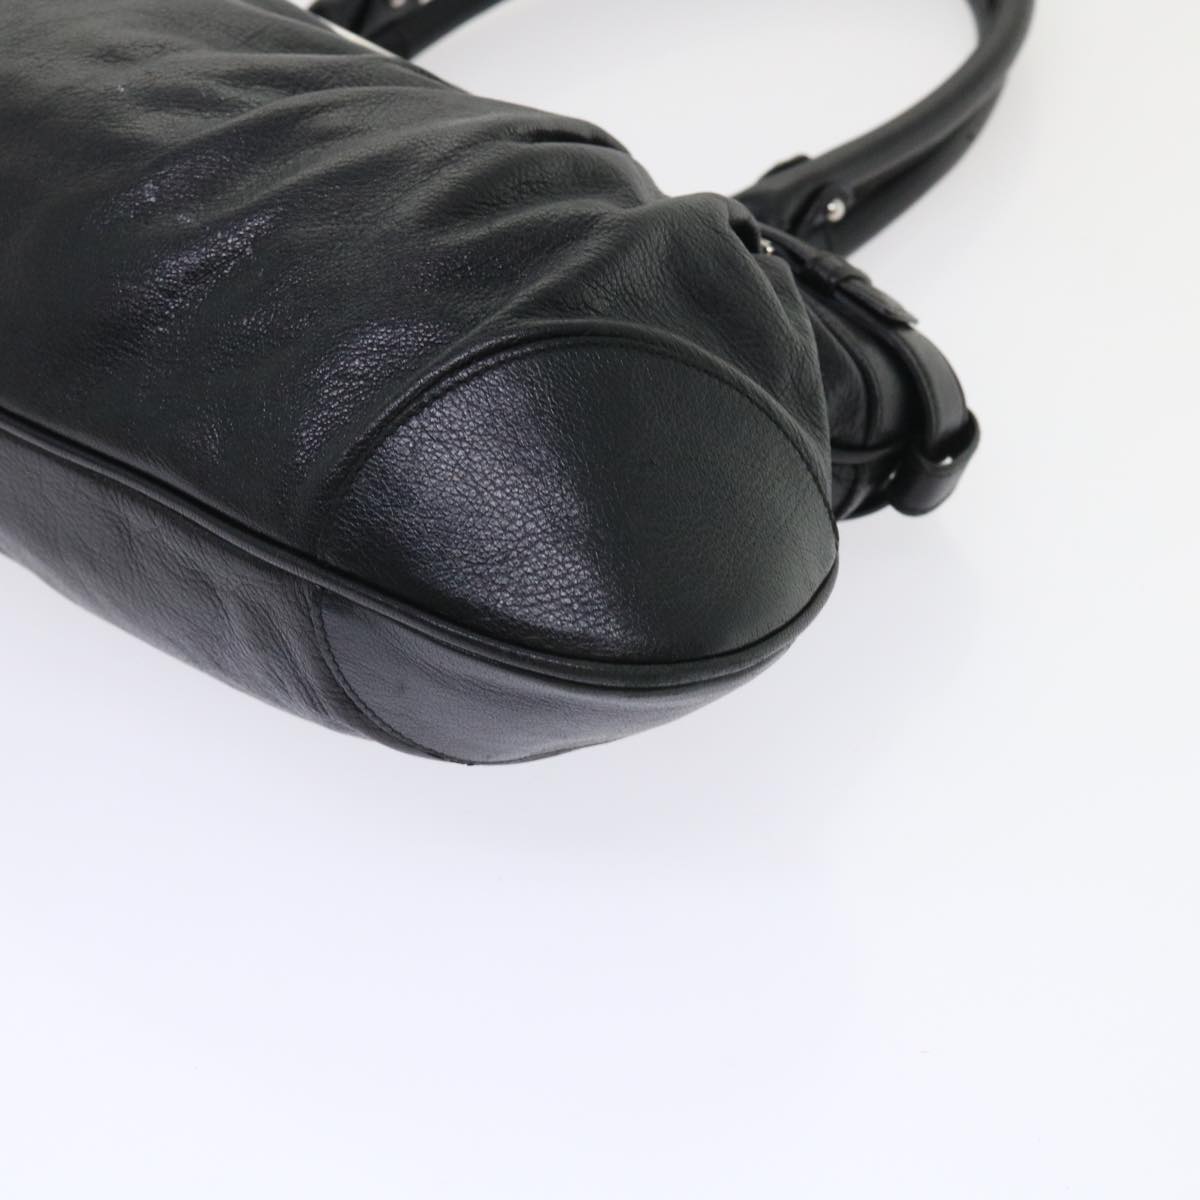 Salvatore Ferragamo Gancini Marissa Shoulder Bag Leather Black Auth 48040